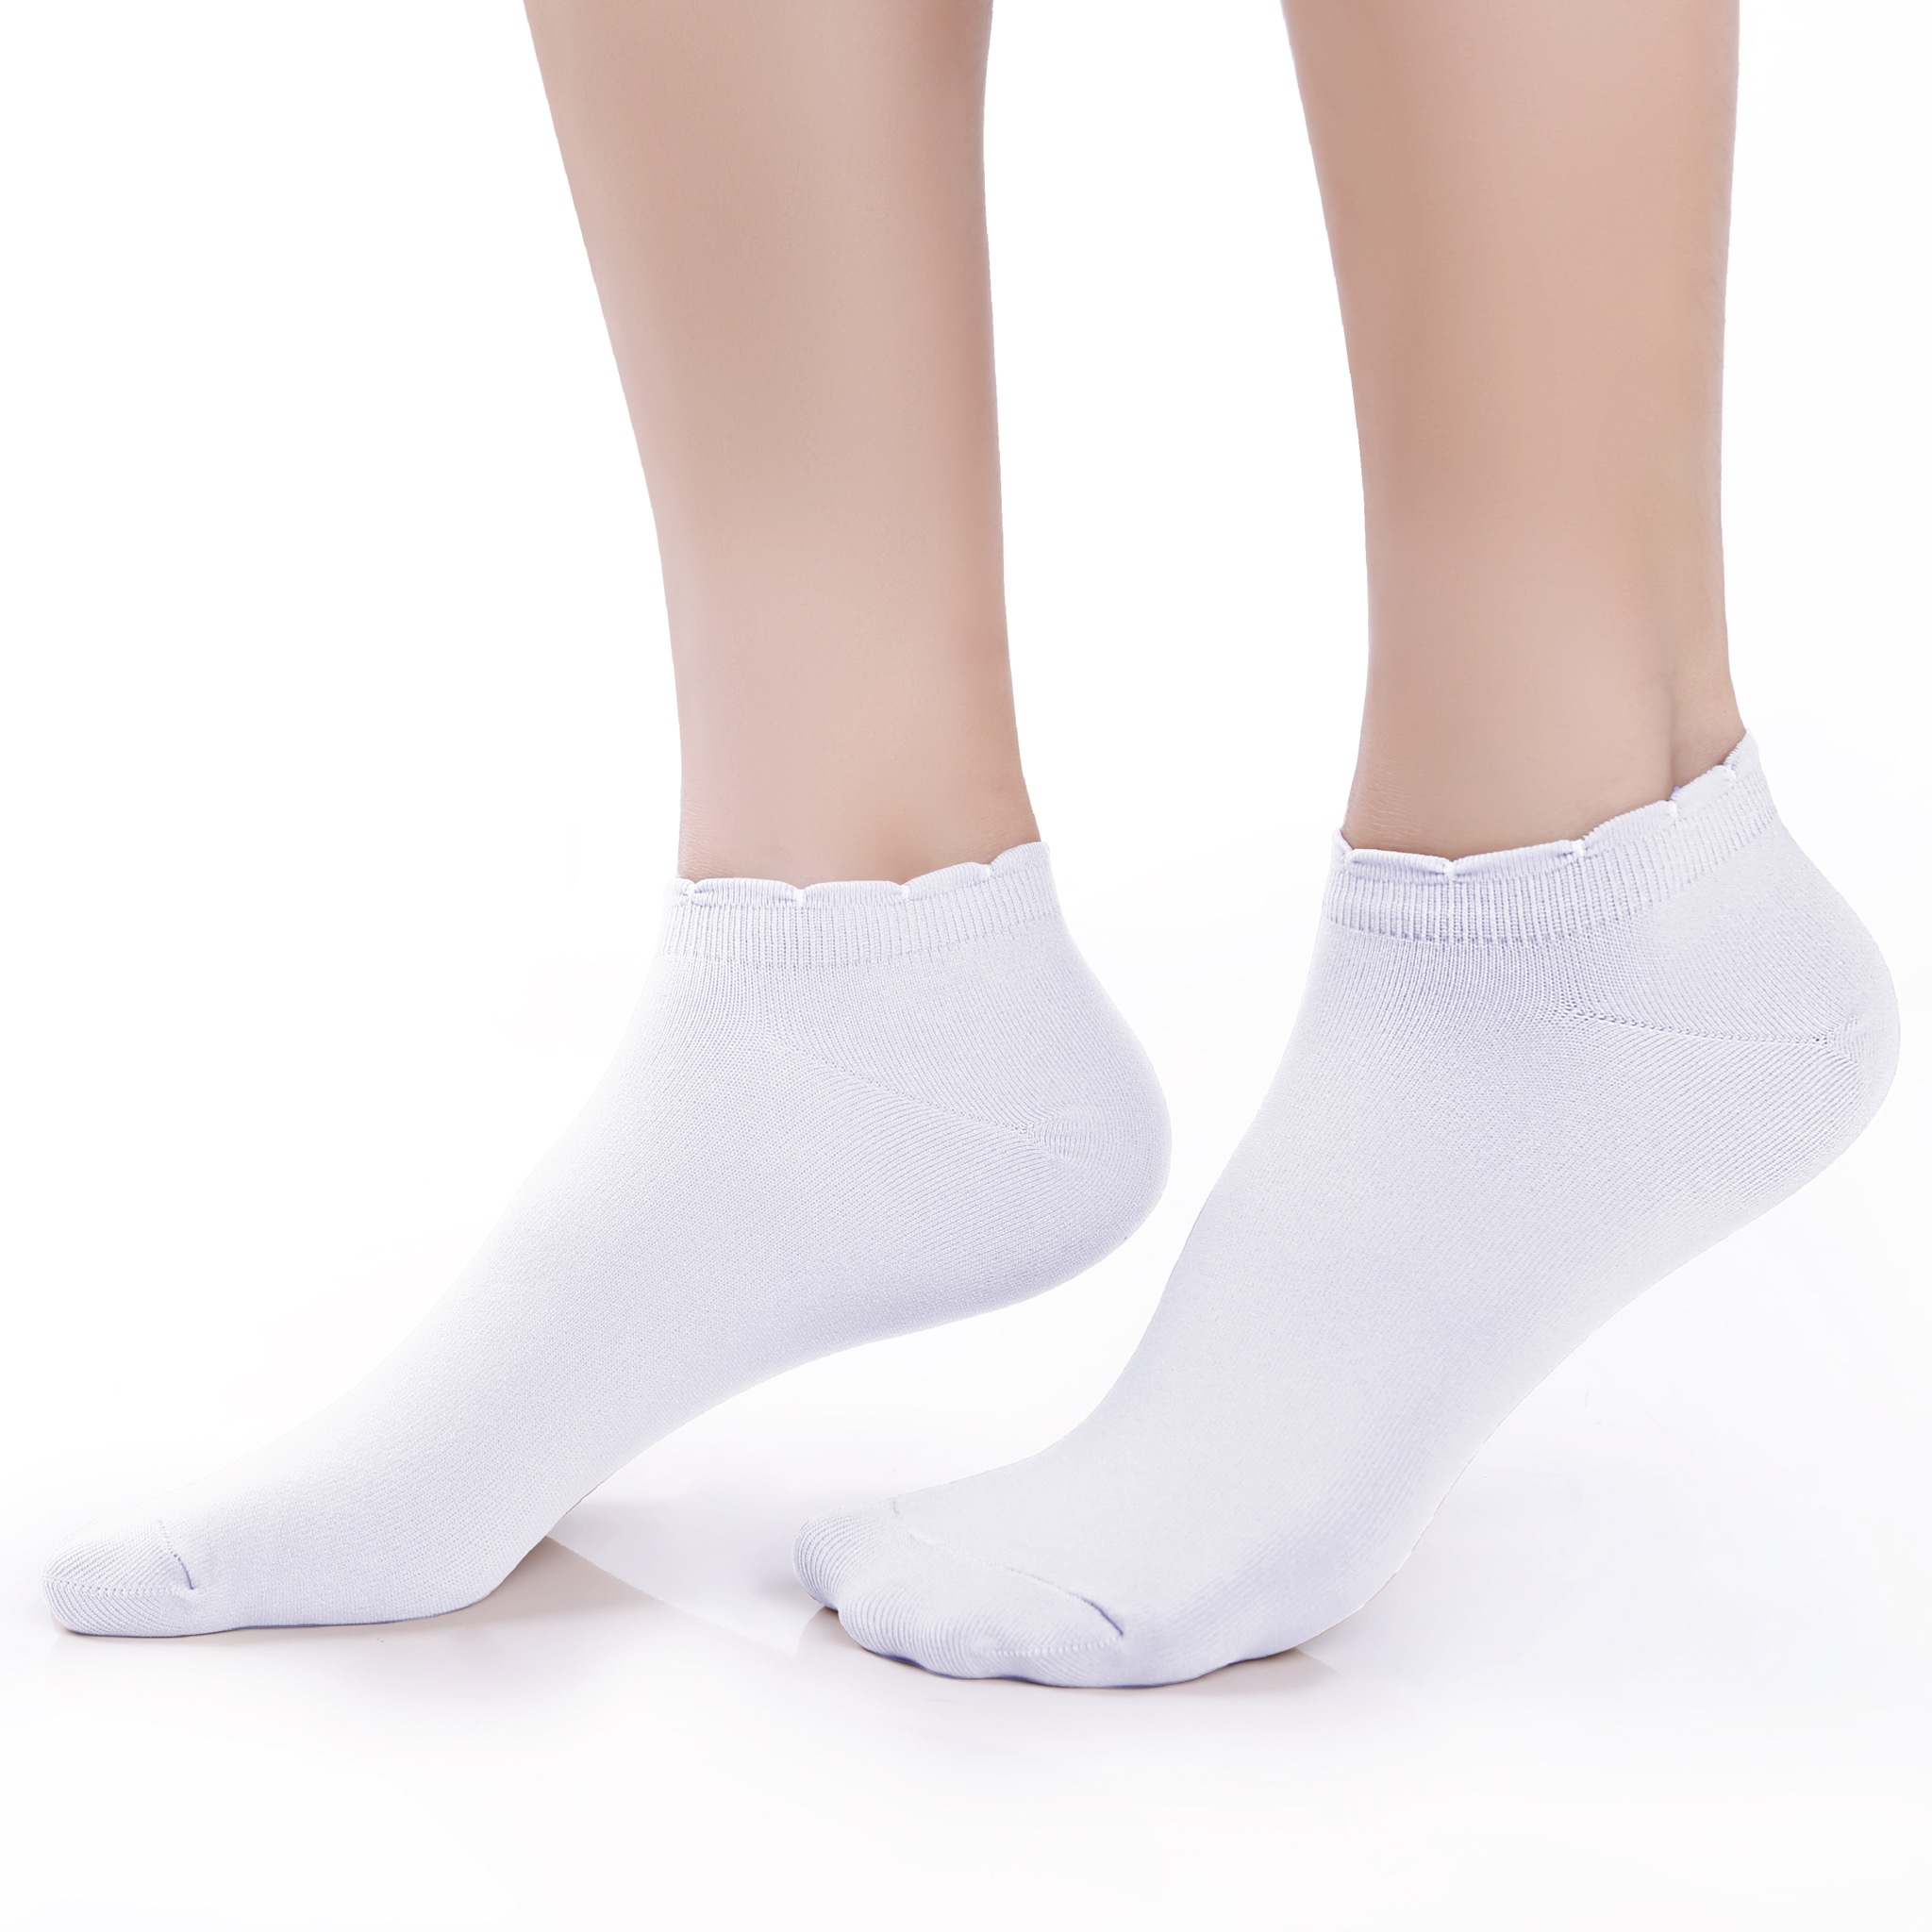 ถุงเท้ารองส้นเนื้อหนา ปิดหน้าเท้า สีขาว รหัส NEFC04